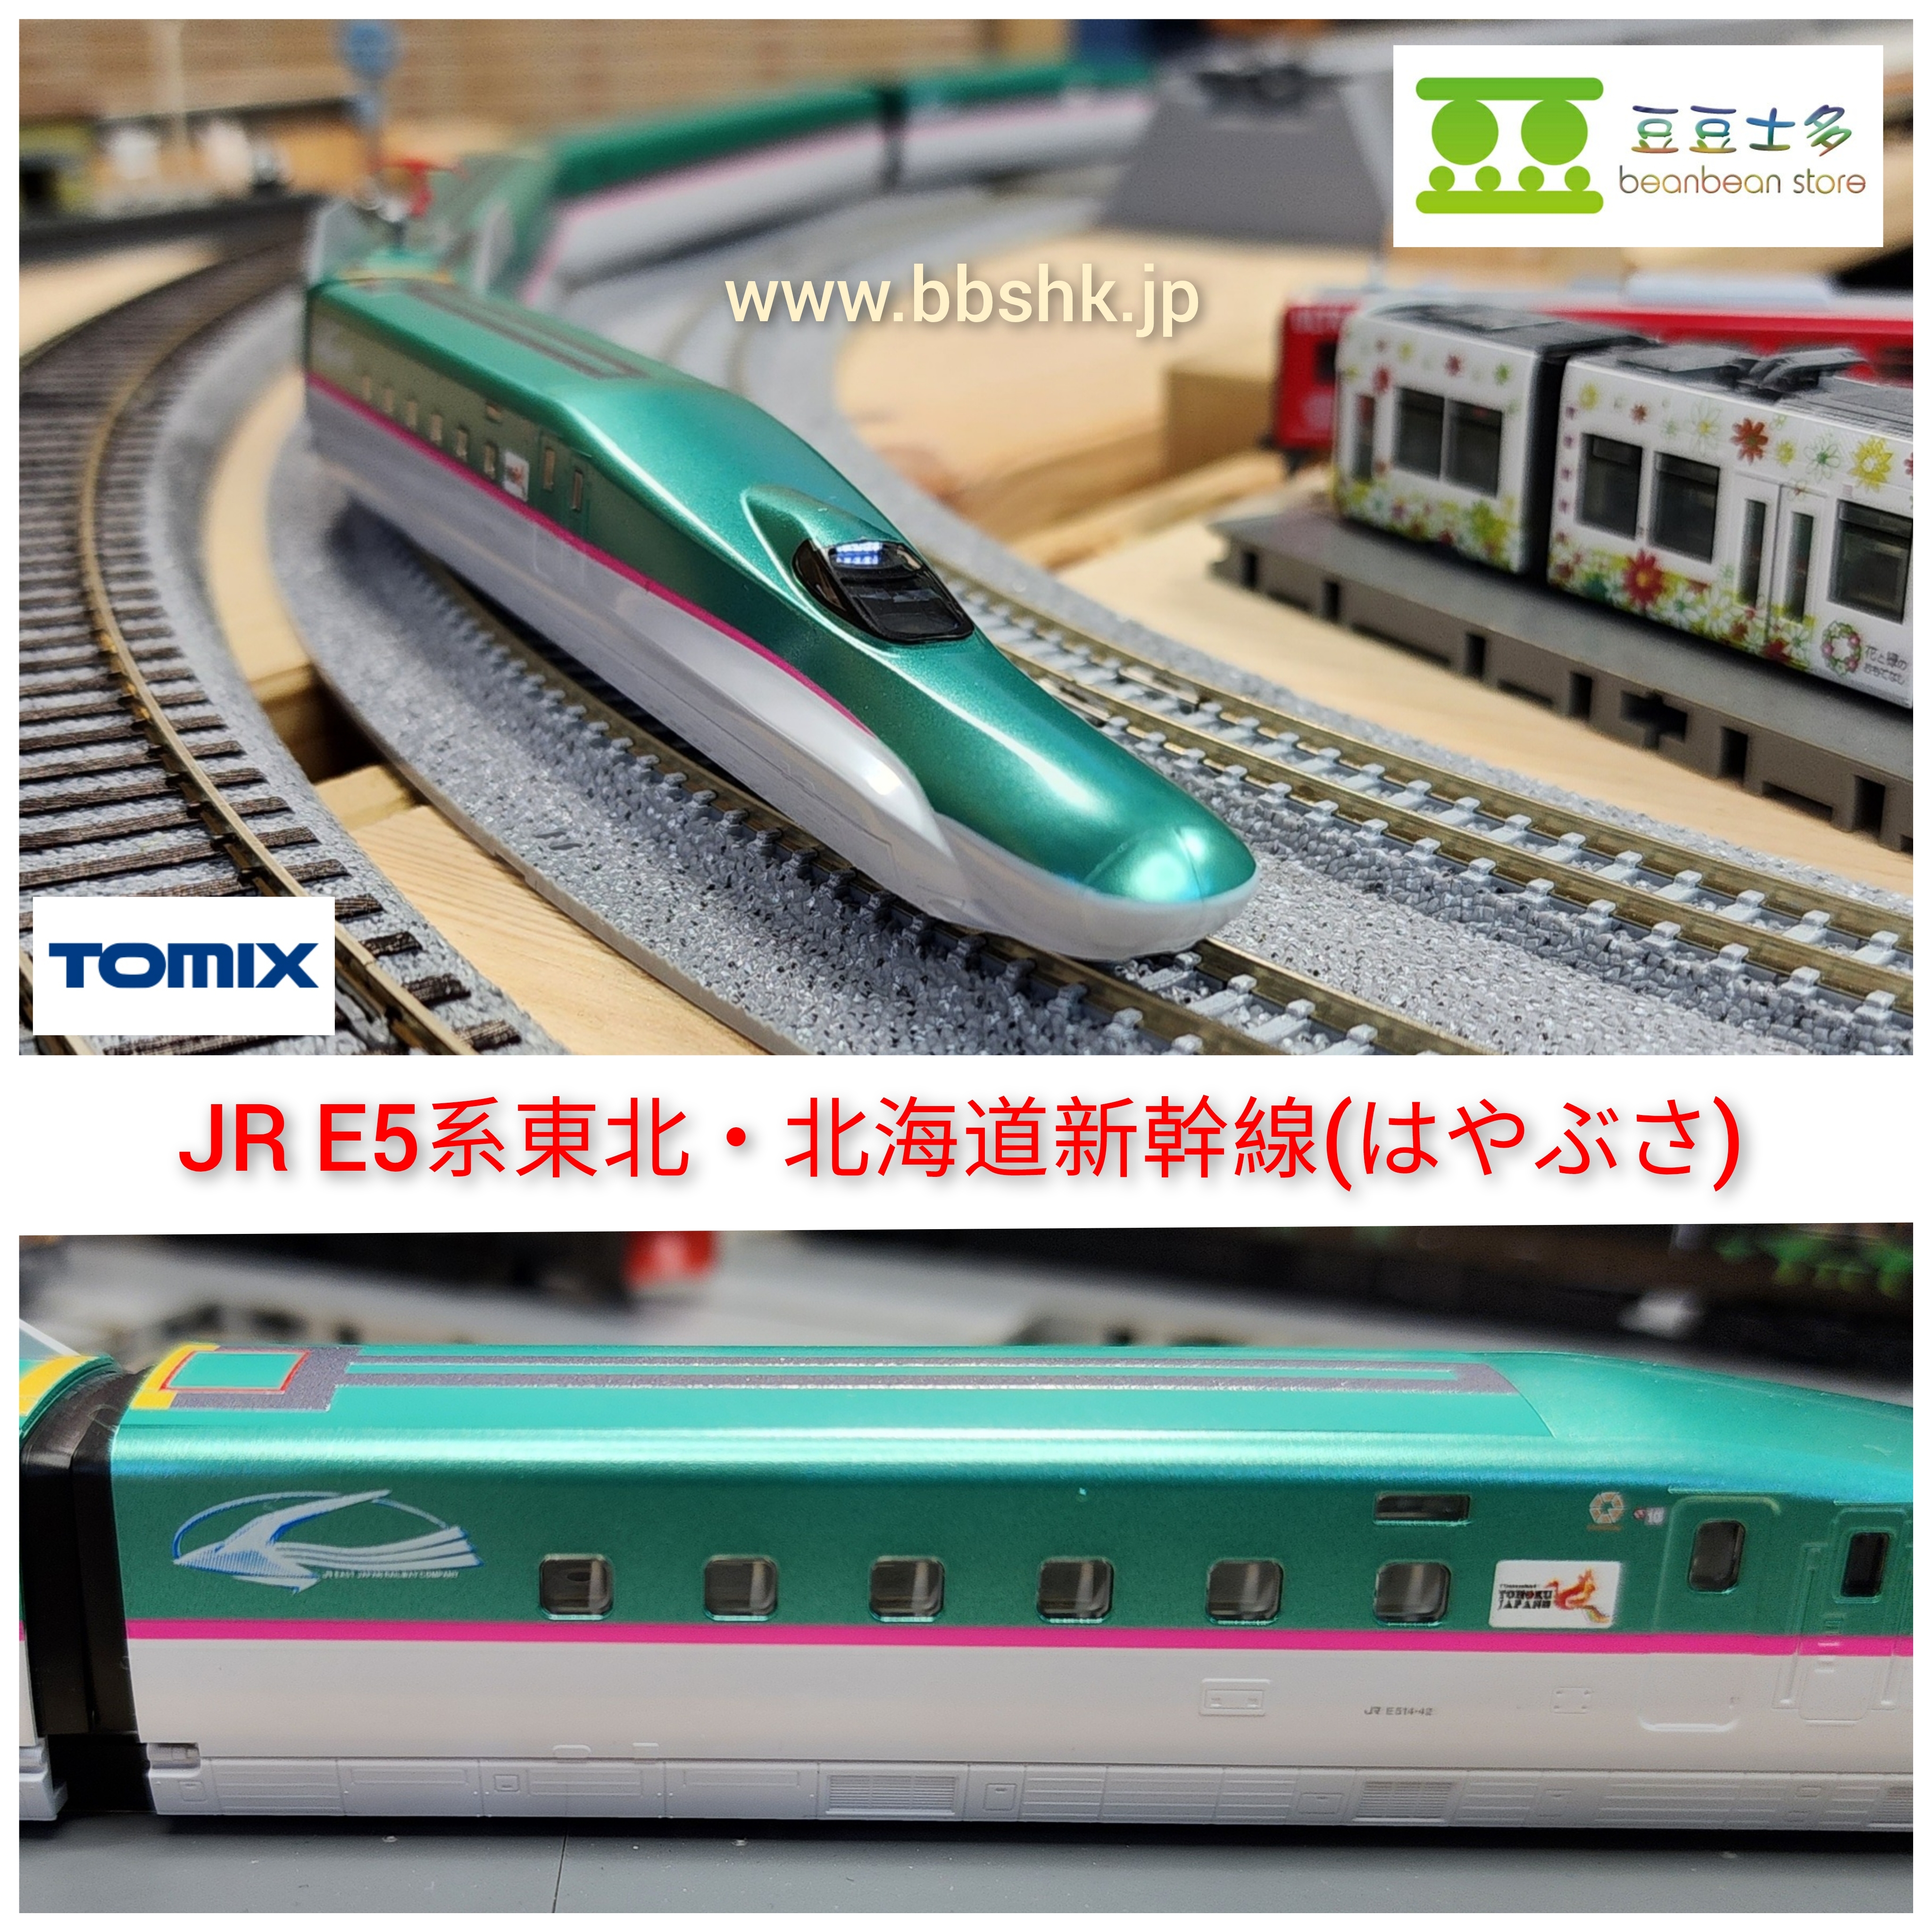 TOMIX 98497 +98498+98499 JR E5系東北・北海道新幹線(隼號) (全編成10